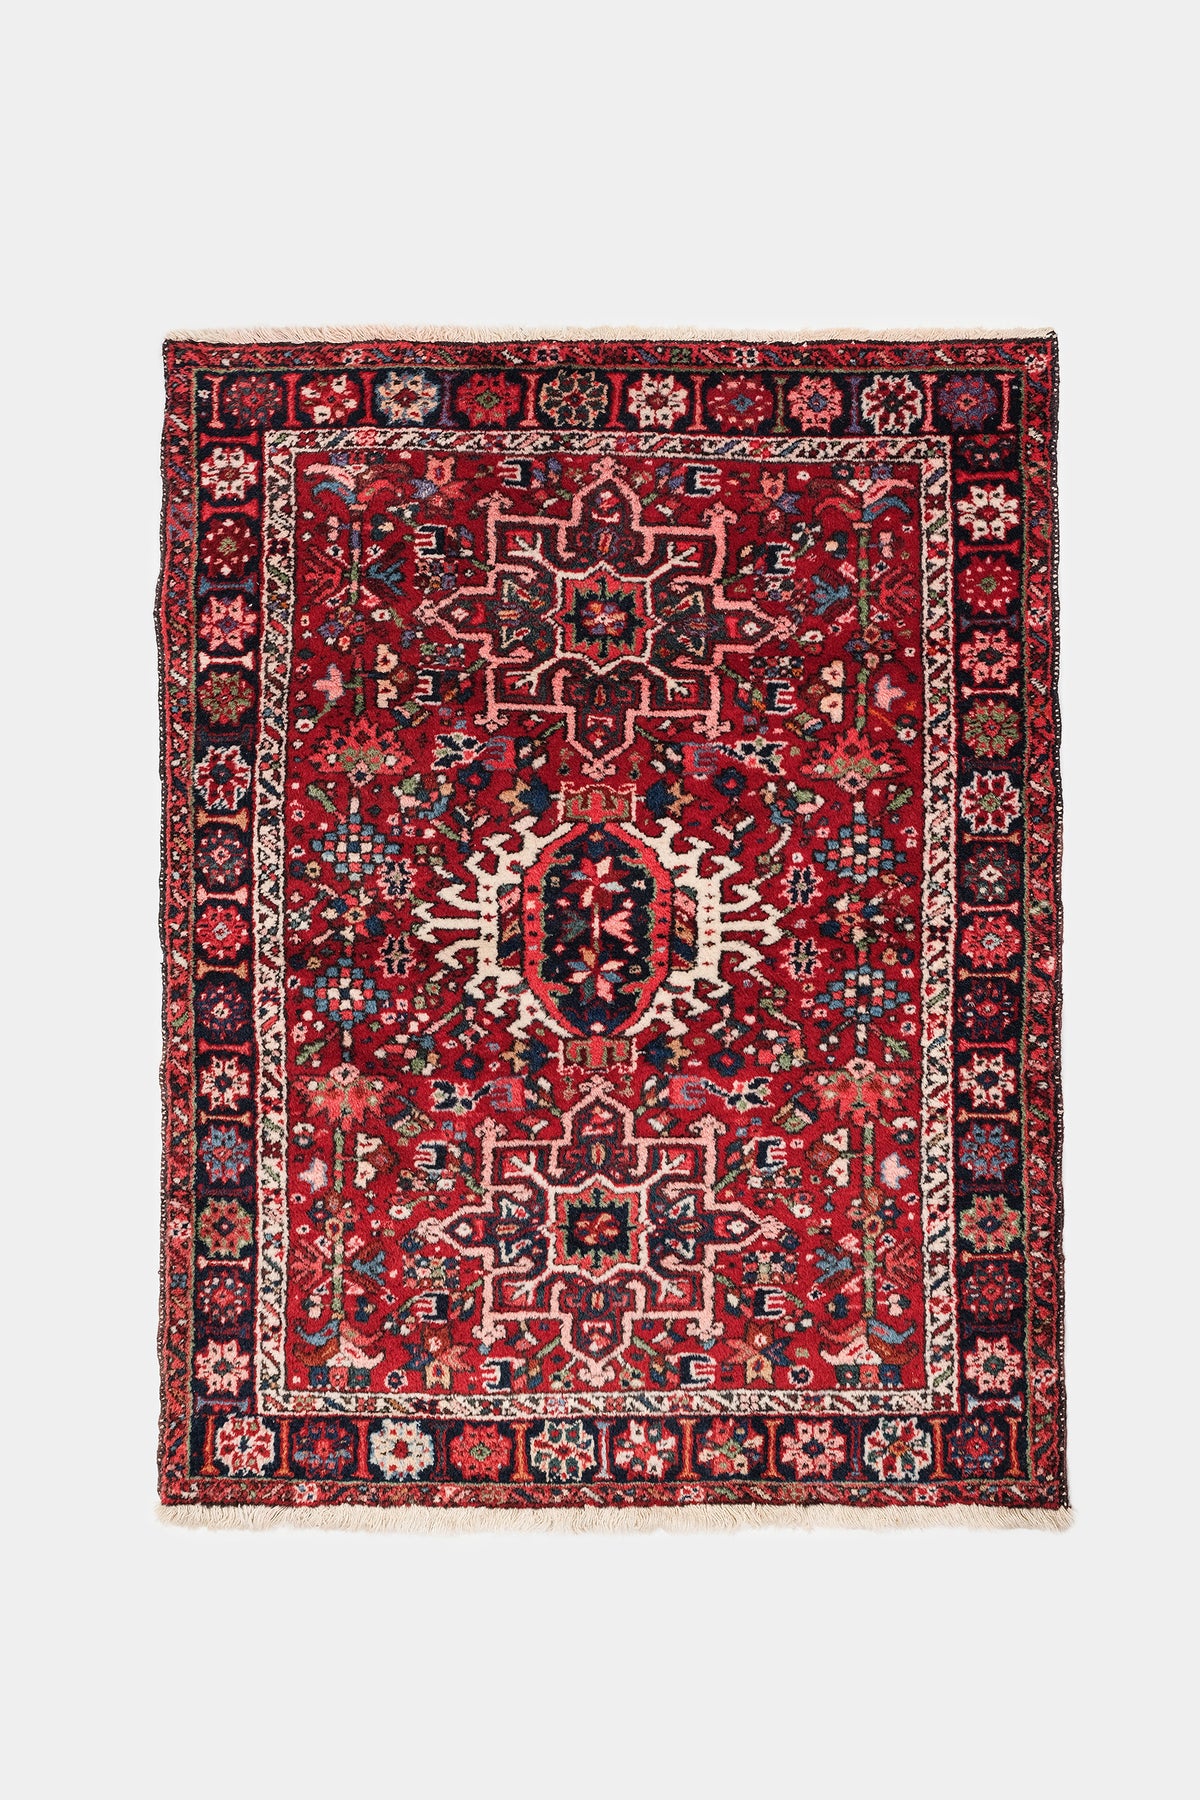 Qaraja Carpet, Iran, 20s